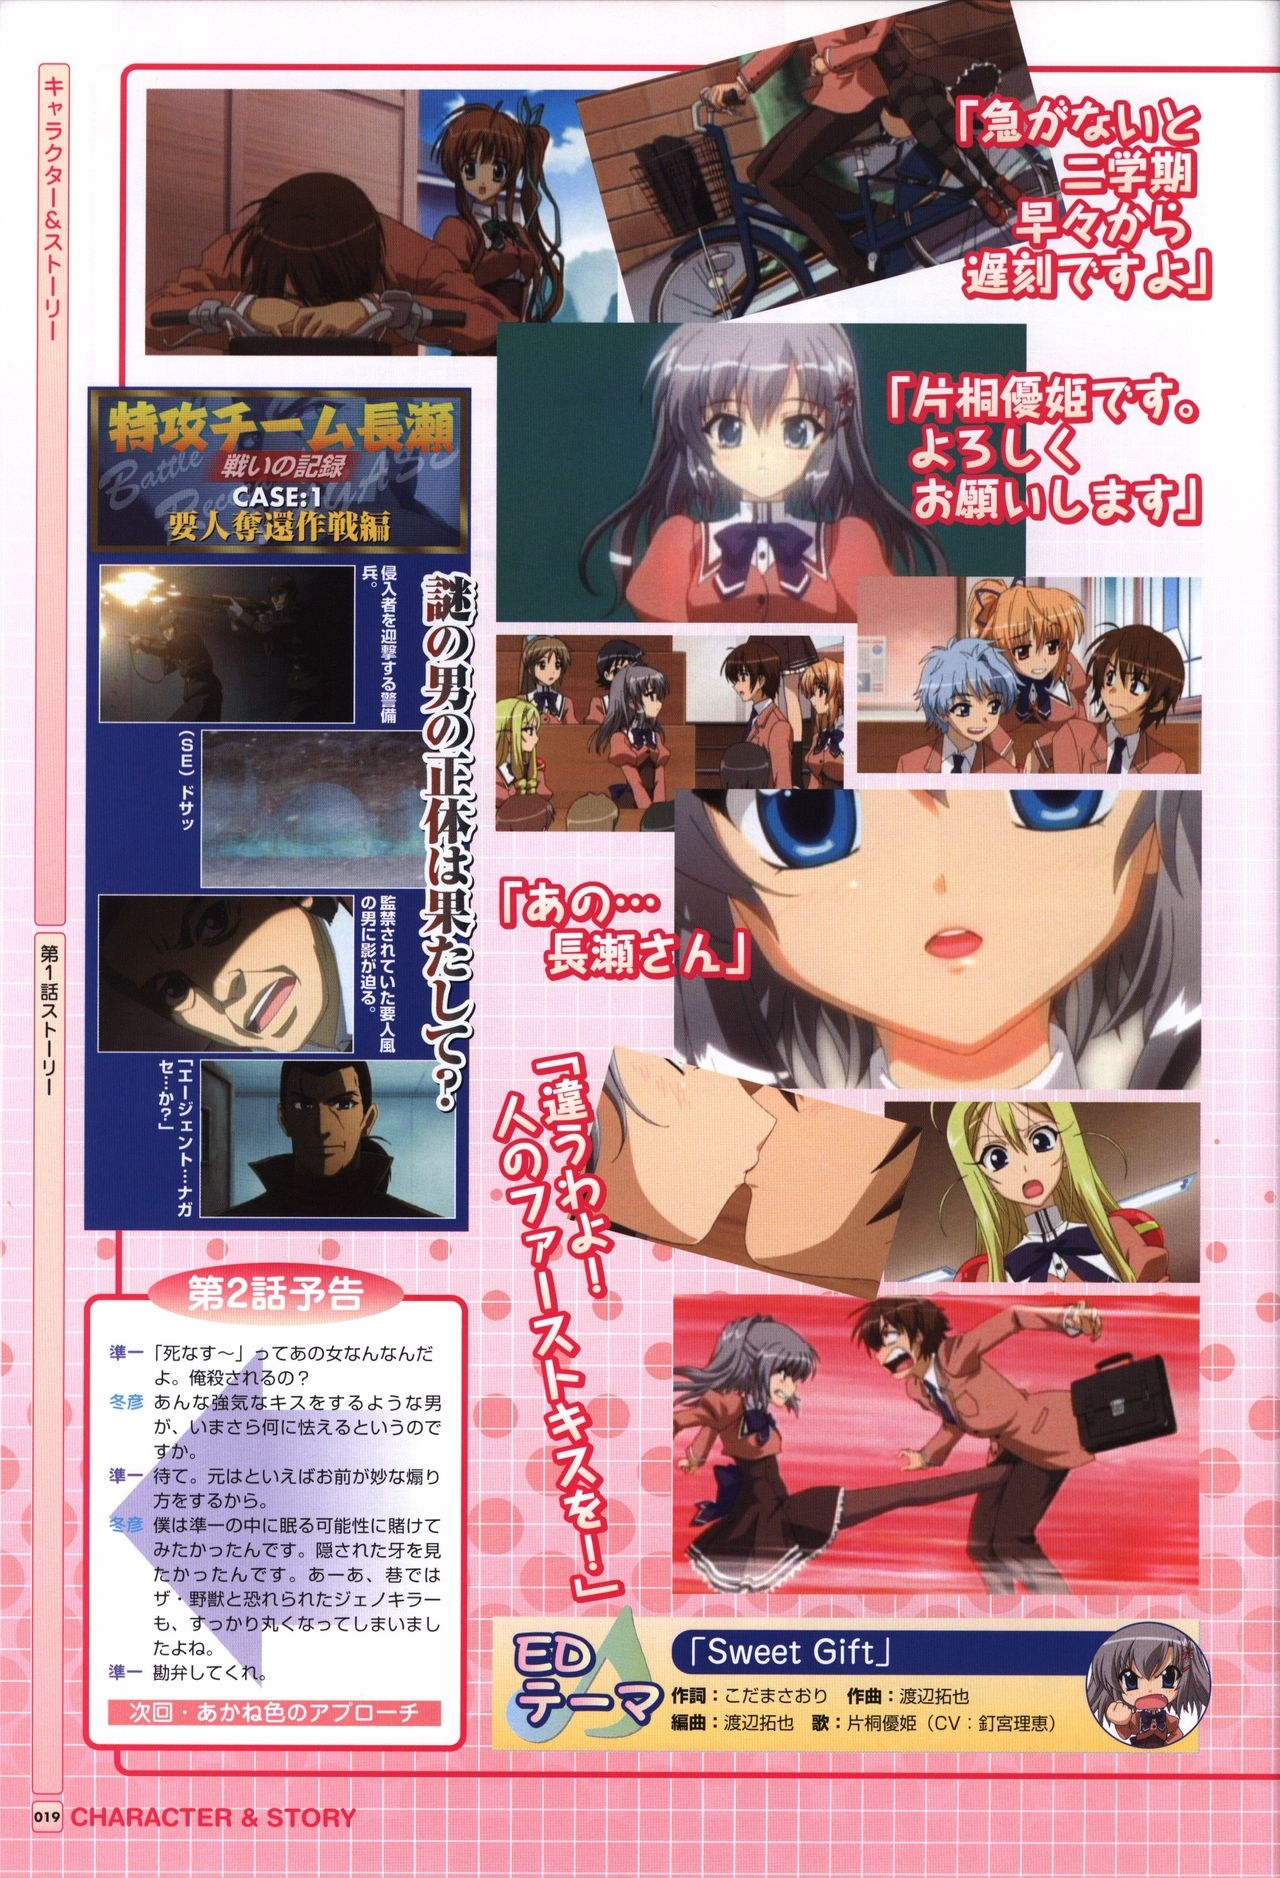 TV ANIME Akaneiro ni Somaru Saka Visual Guide Book 19